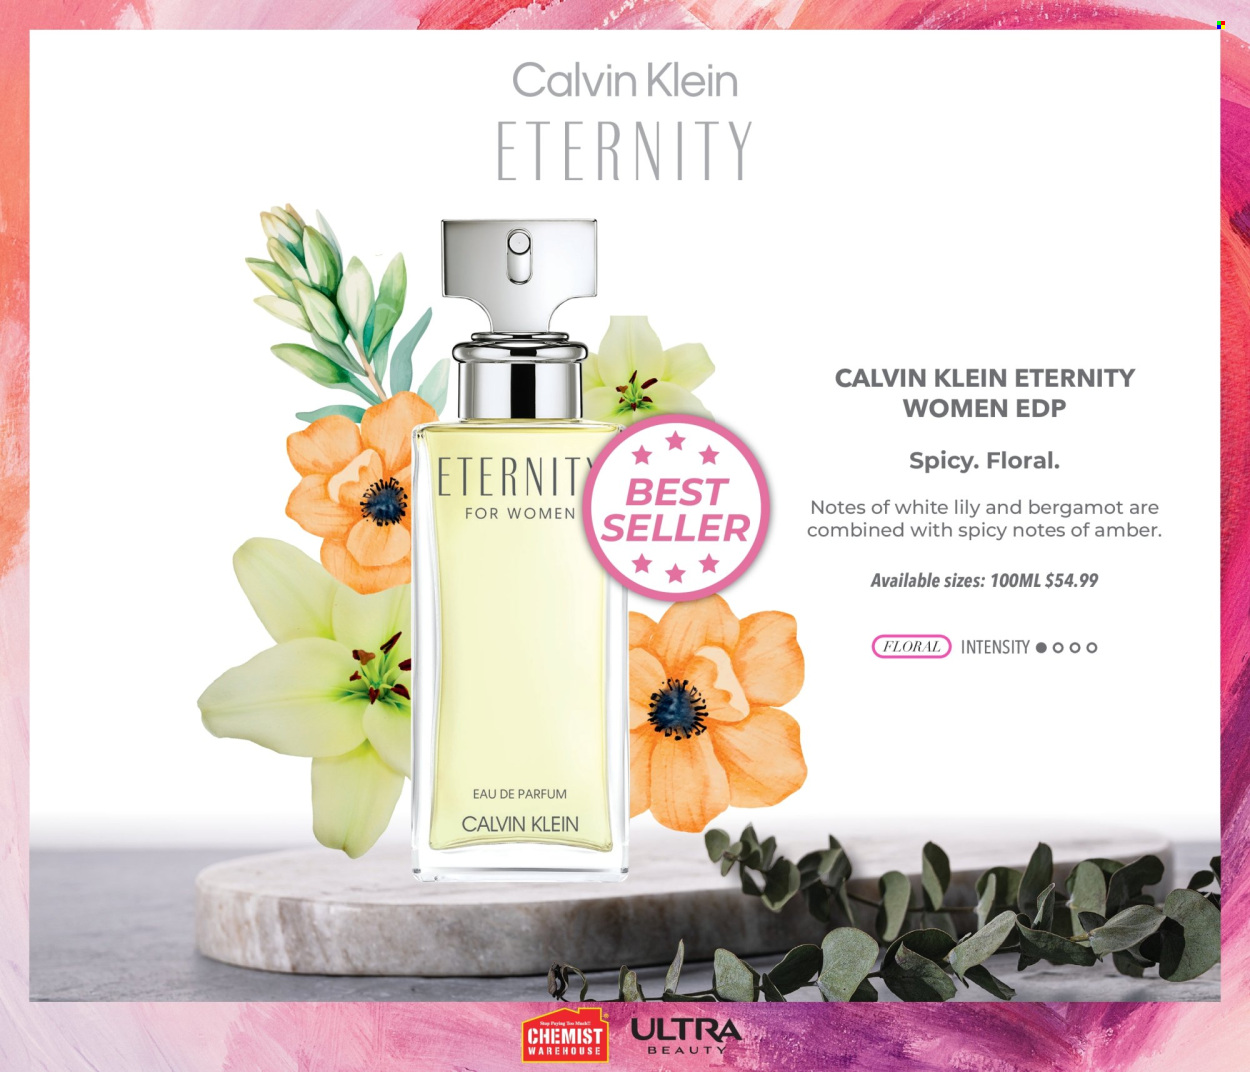 thumbnail - Chemist Warehouse mailer - Sales products - Calvin Klein, eau de parfum. Page 17.